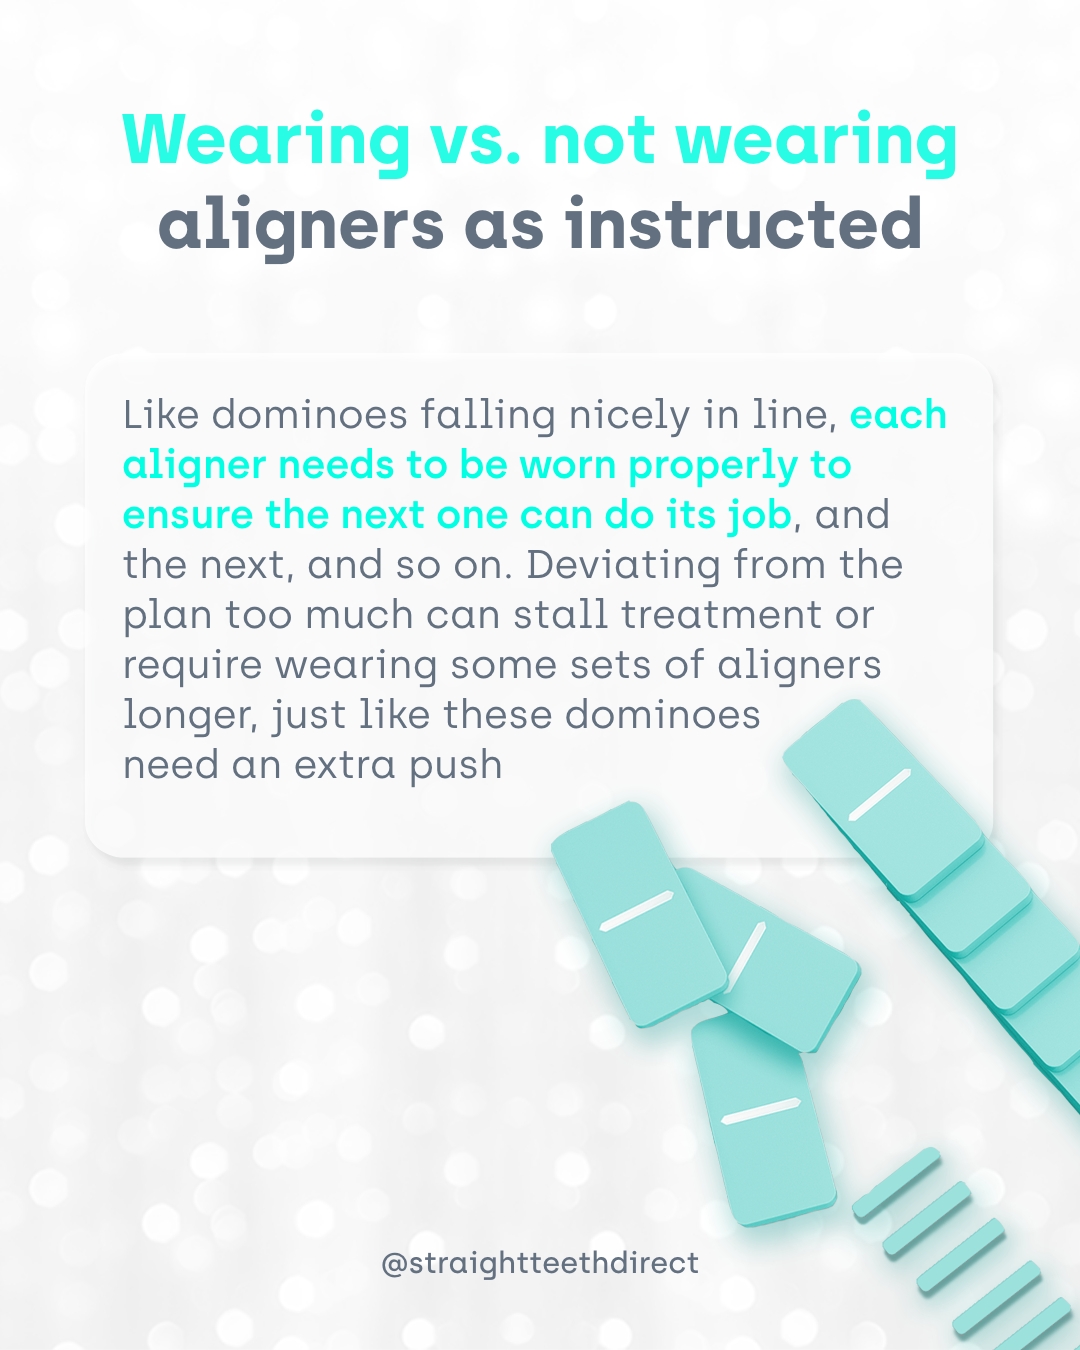 wearing aligners vs not wearing